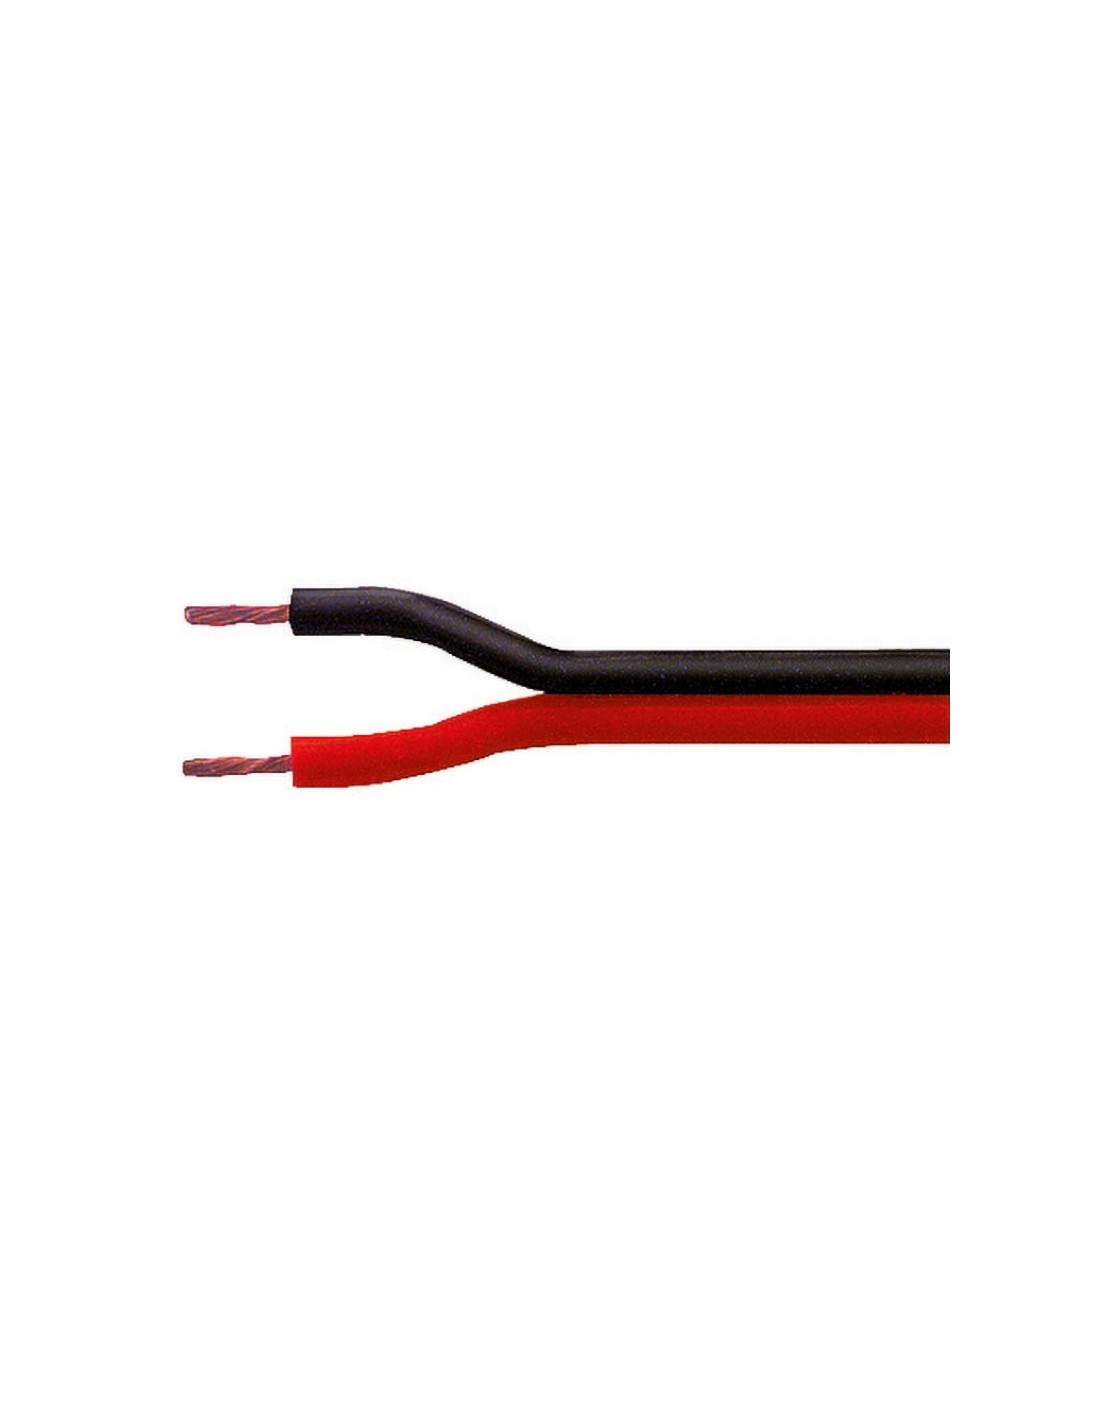 https://www.tancredi.it/58988-thickbox_default/-Cble-ruban-2x150-mm2-conducteur-en-cuivre-gaine-en-PVC-couleur-rouge-et-noir-diametre-6-mm.jpg